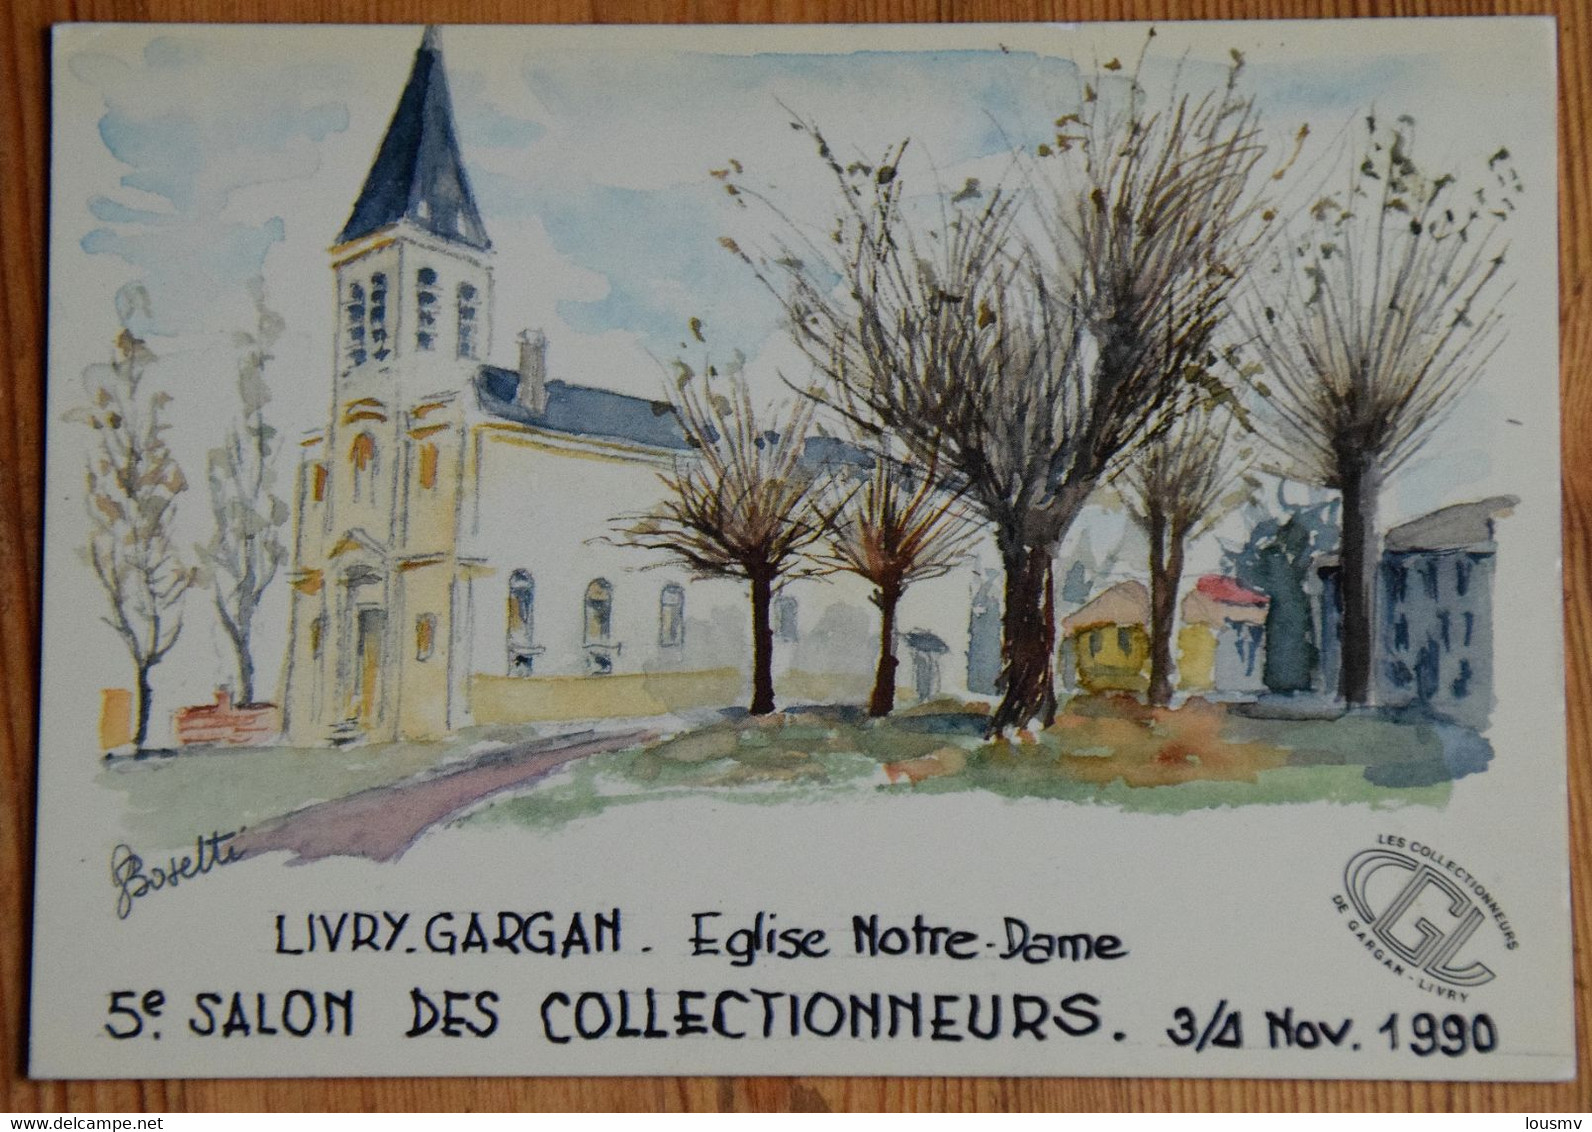 93 : Livry-Gargan - Eglise Notre-Dame - 5e Salon Des Collectionneurs 1990 - Numérotée - (n°25511) - Bourses & Salons De Collections